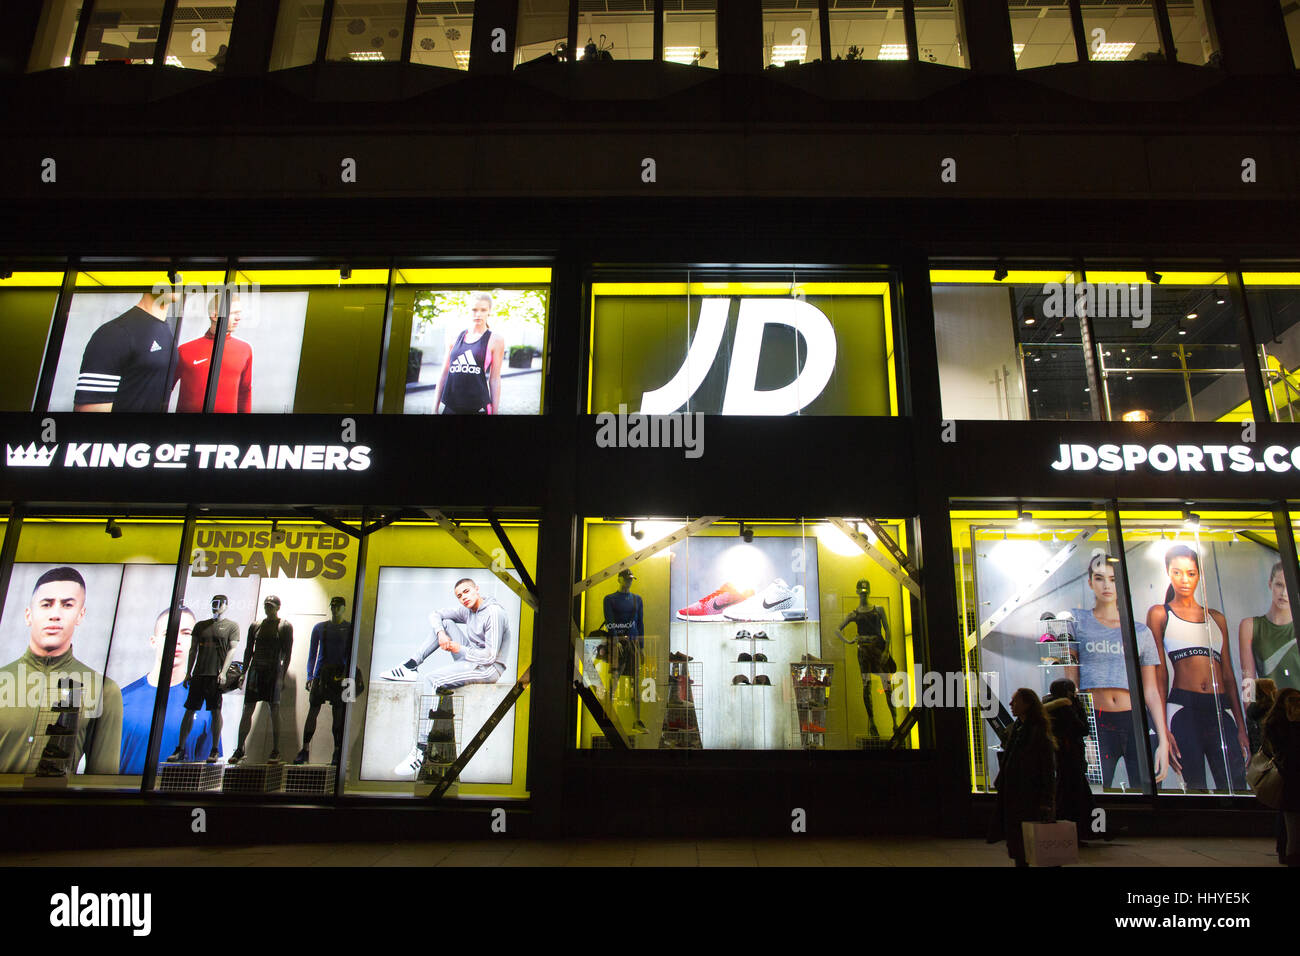 Mode Sports JD plc, plus communément connu sous le nom de high street, JD seulement détaillants de mode sport, Oxford Street, Londres, Angleterre, Royaume-Uni. Banque D'Images